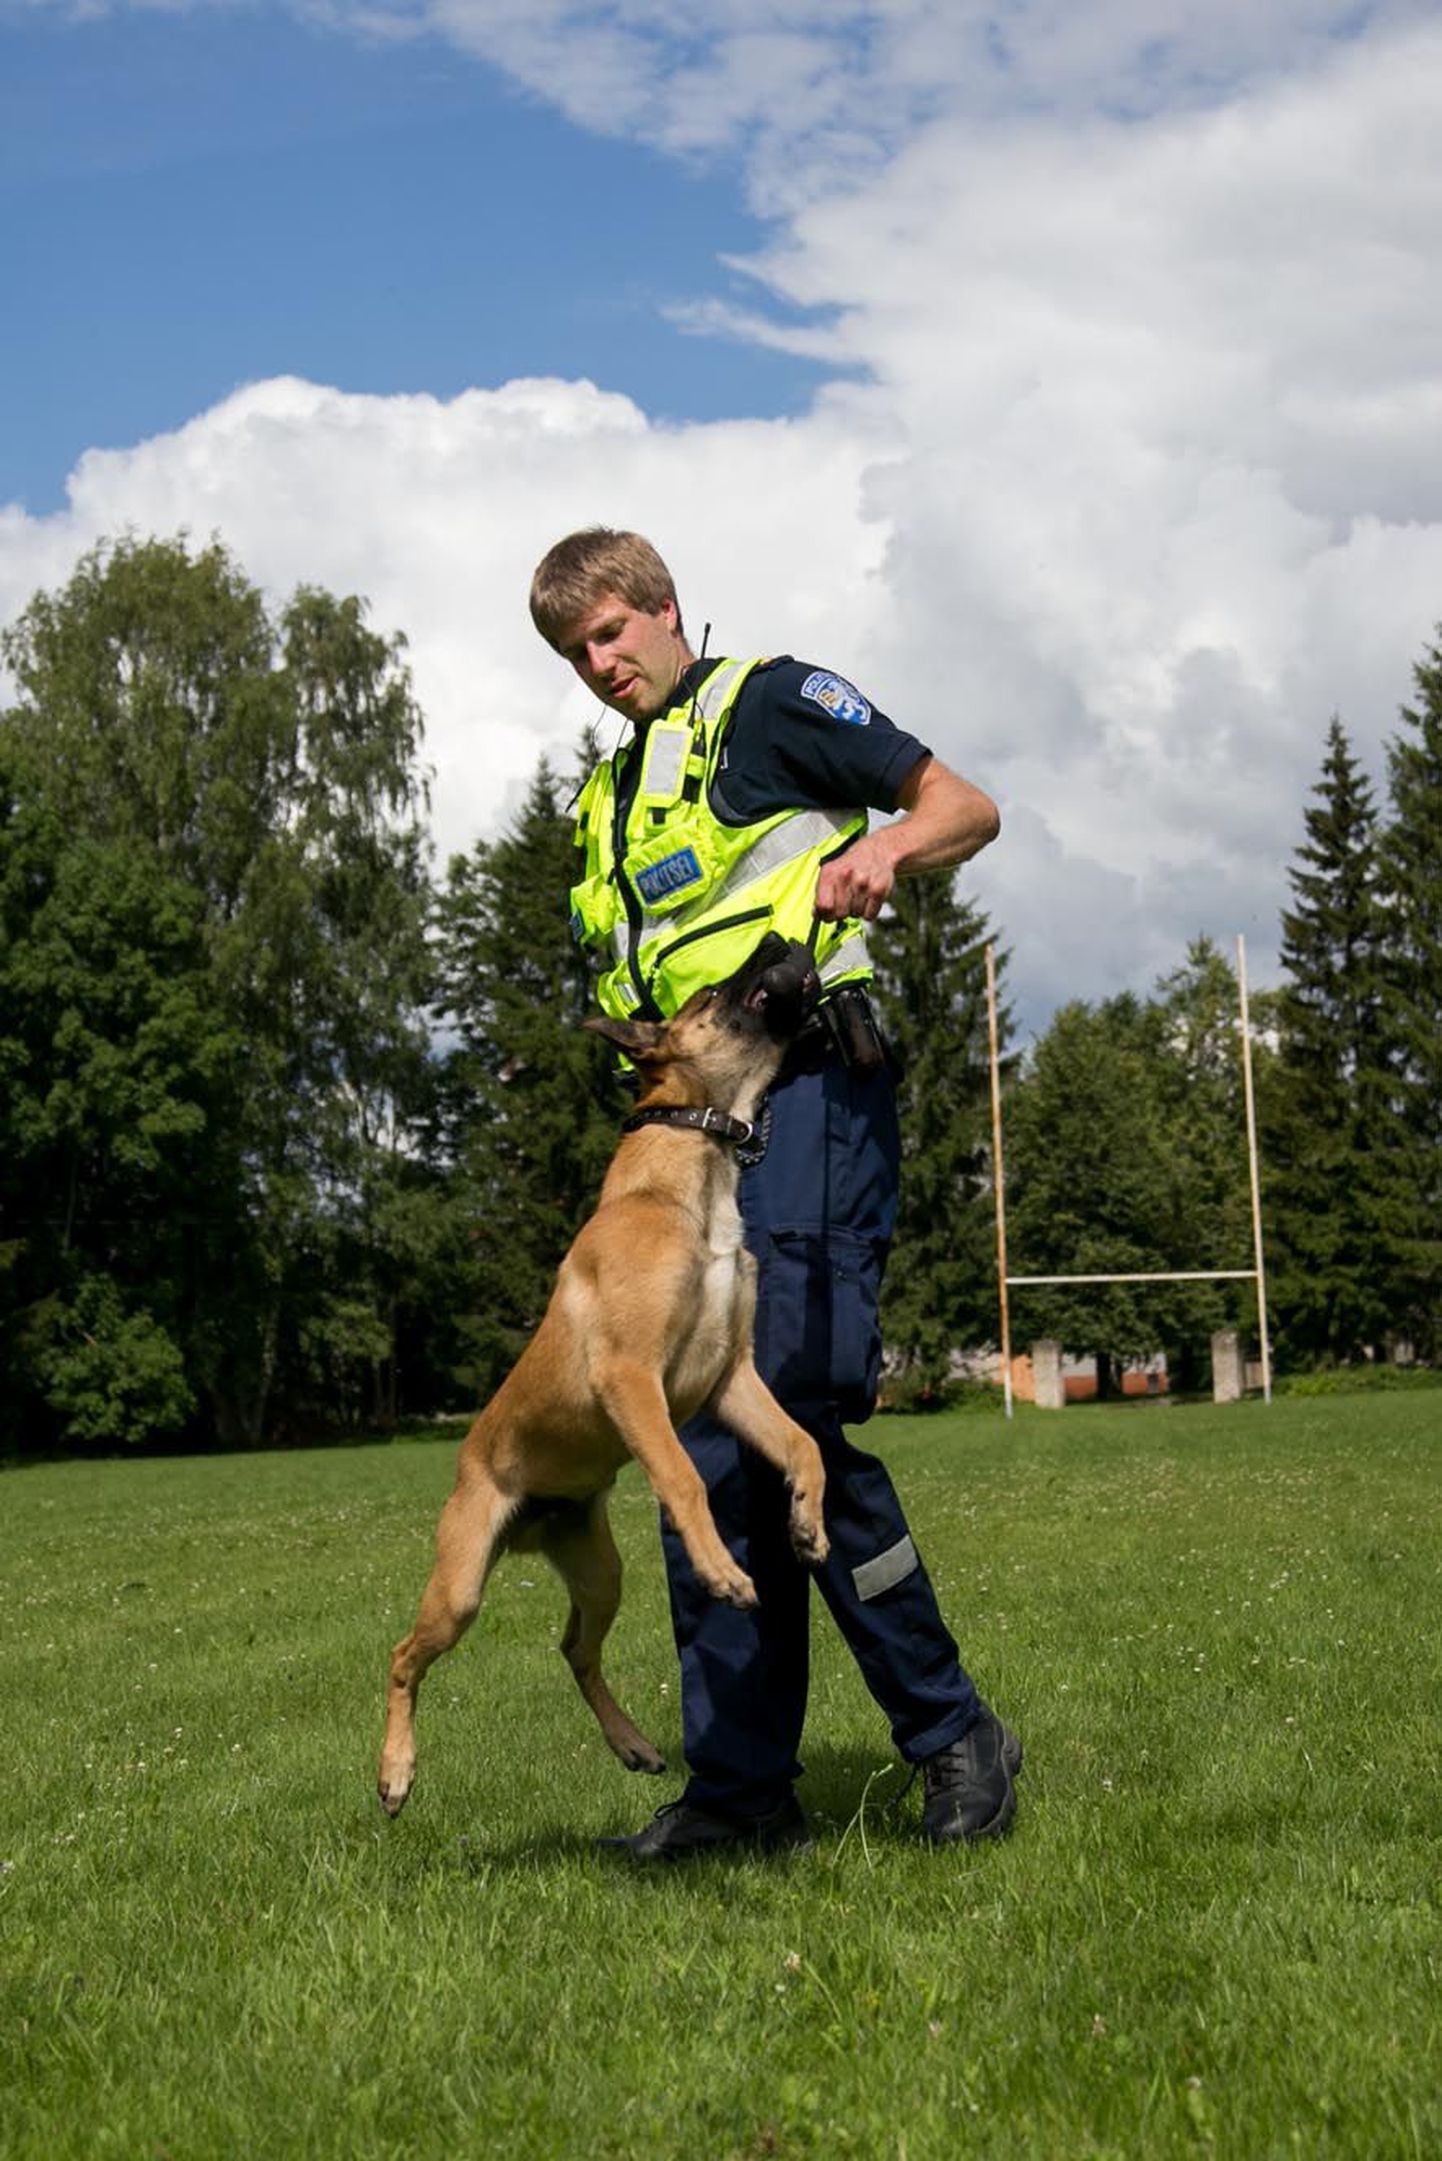 Vanemkoerajuht Taavi Idavain ja tulevane patrullkoer Jäpe veedavad sageli aega koos mängides. Selle nii-öelda mängu käigus õpib koer üha uusi tulevases ametis vajalikke oskusi.